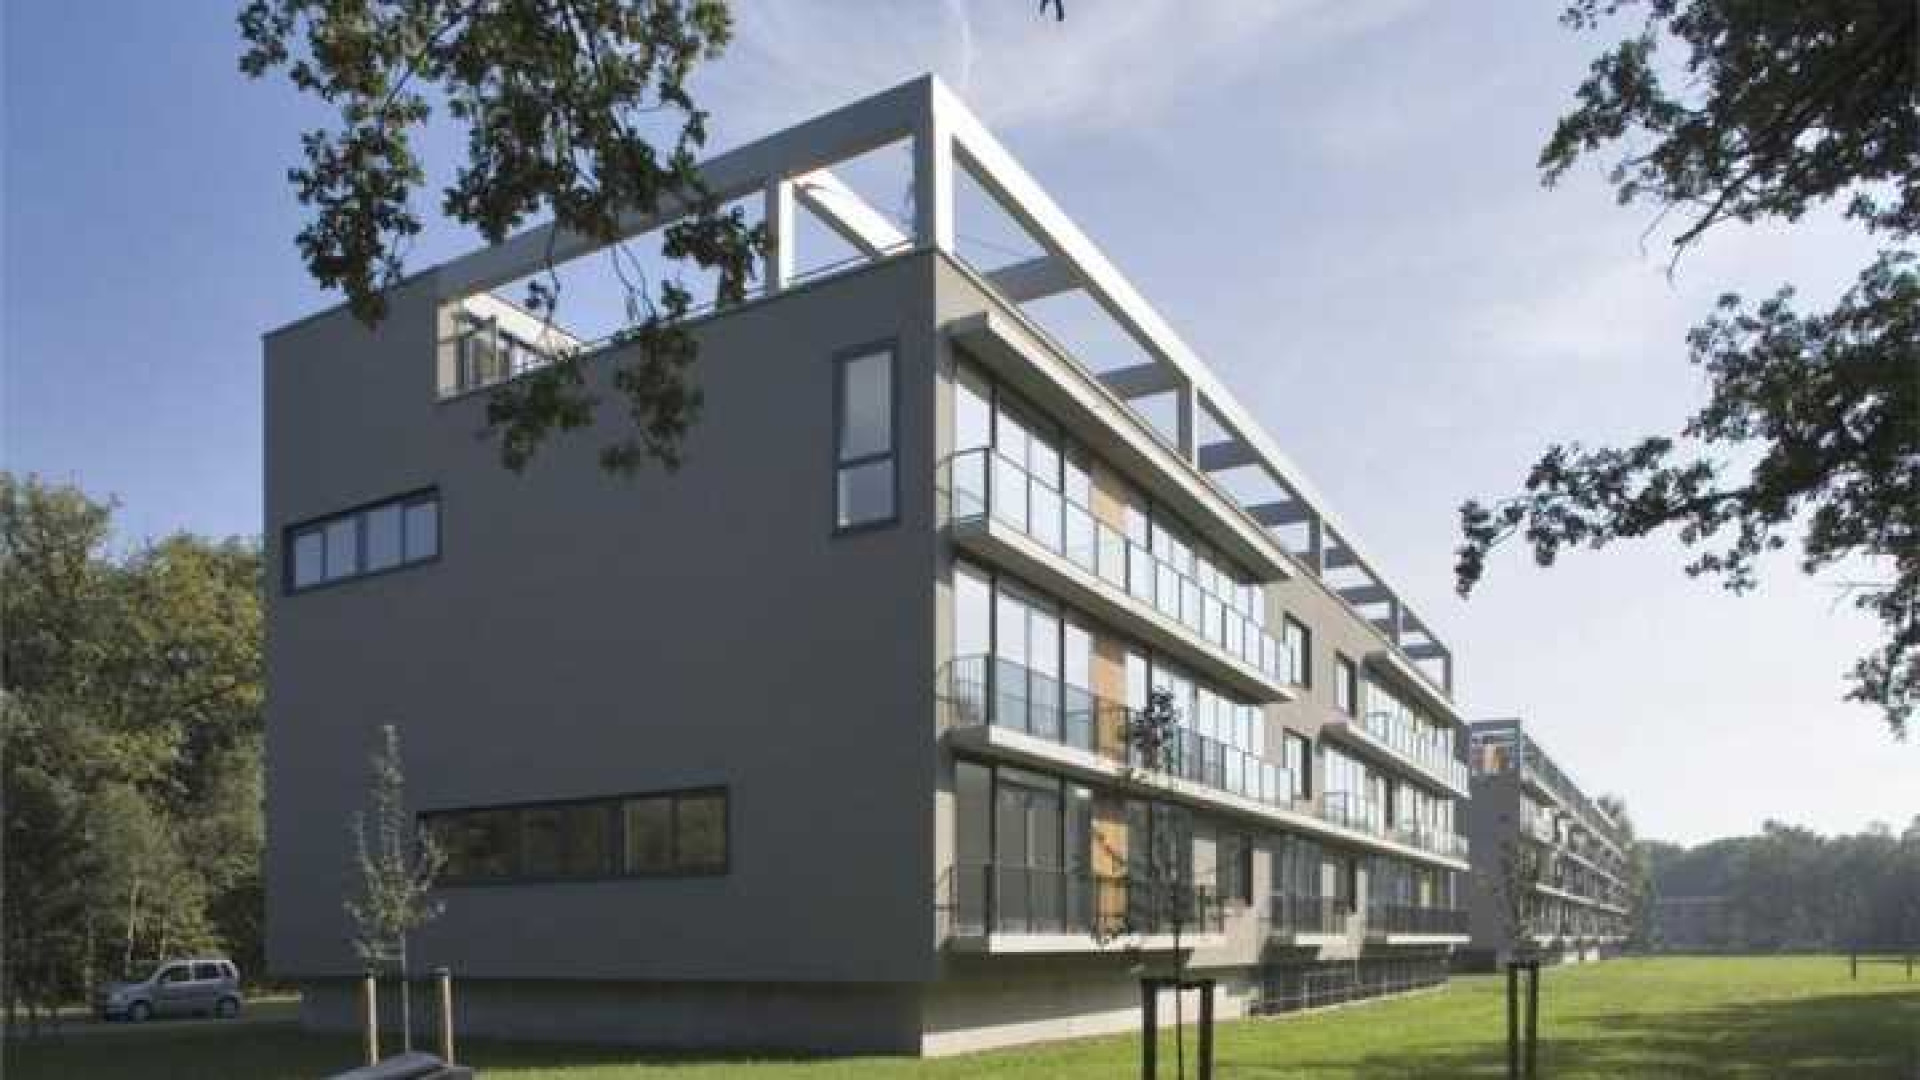 Ilse de Lange huurt luxe penthouse in Hilversum. Zie foto's 10